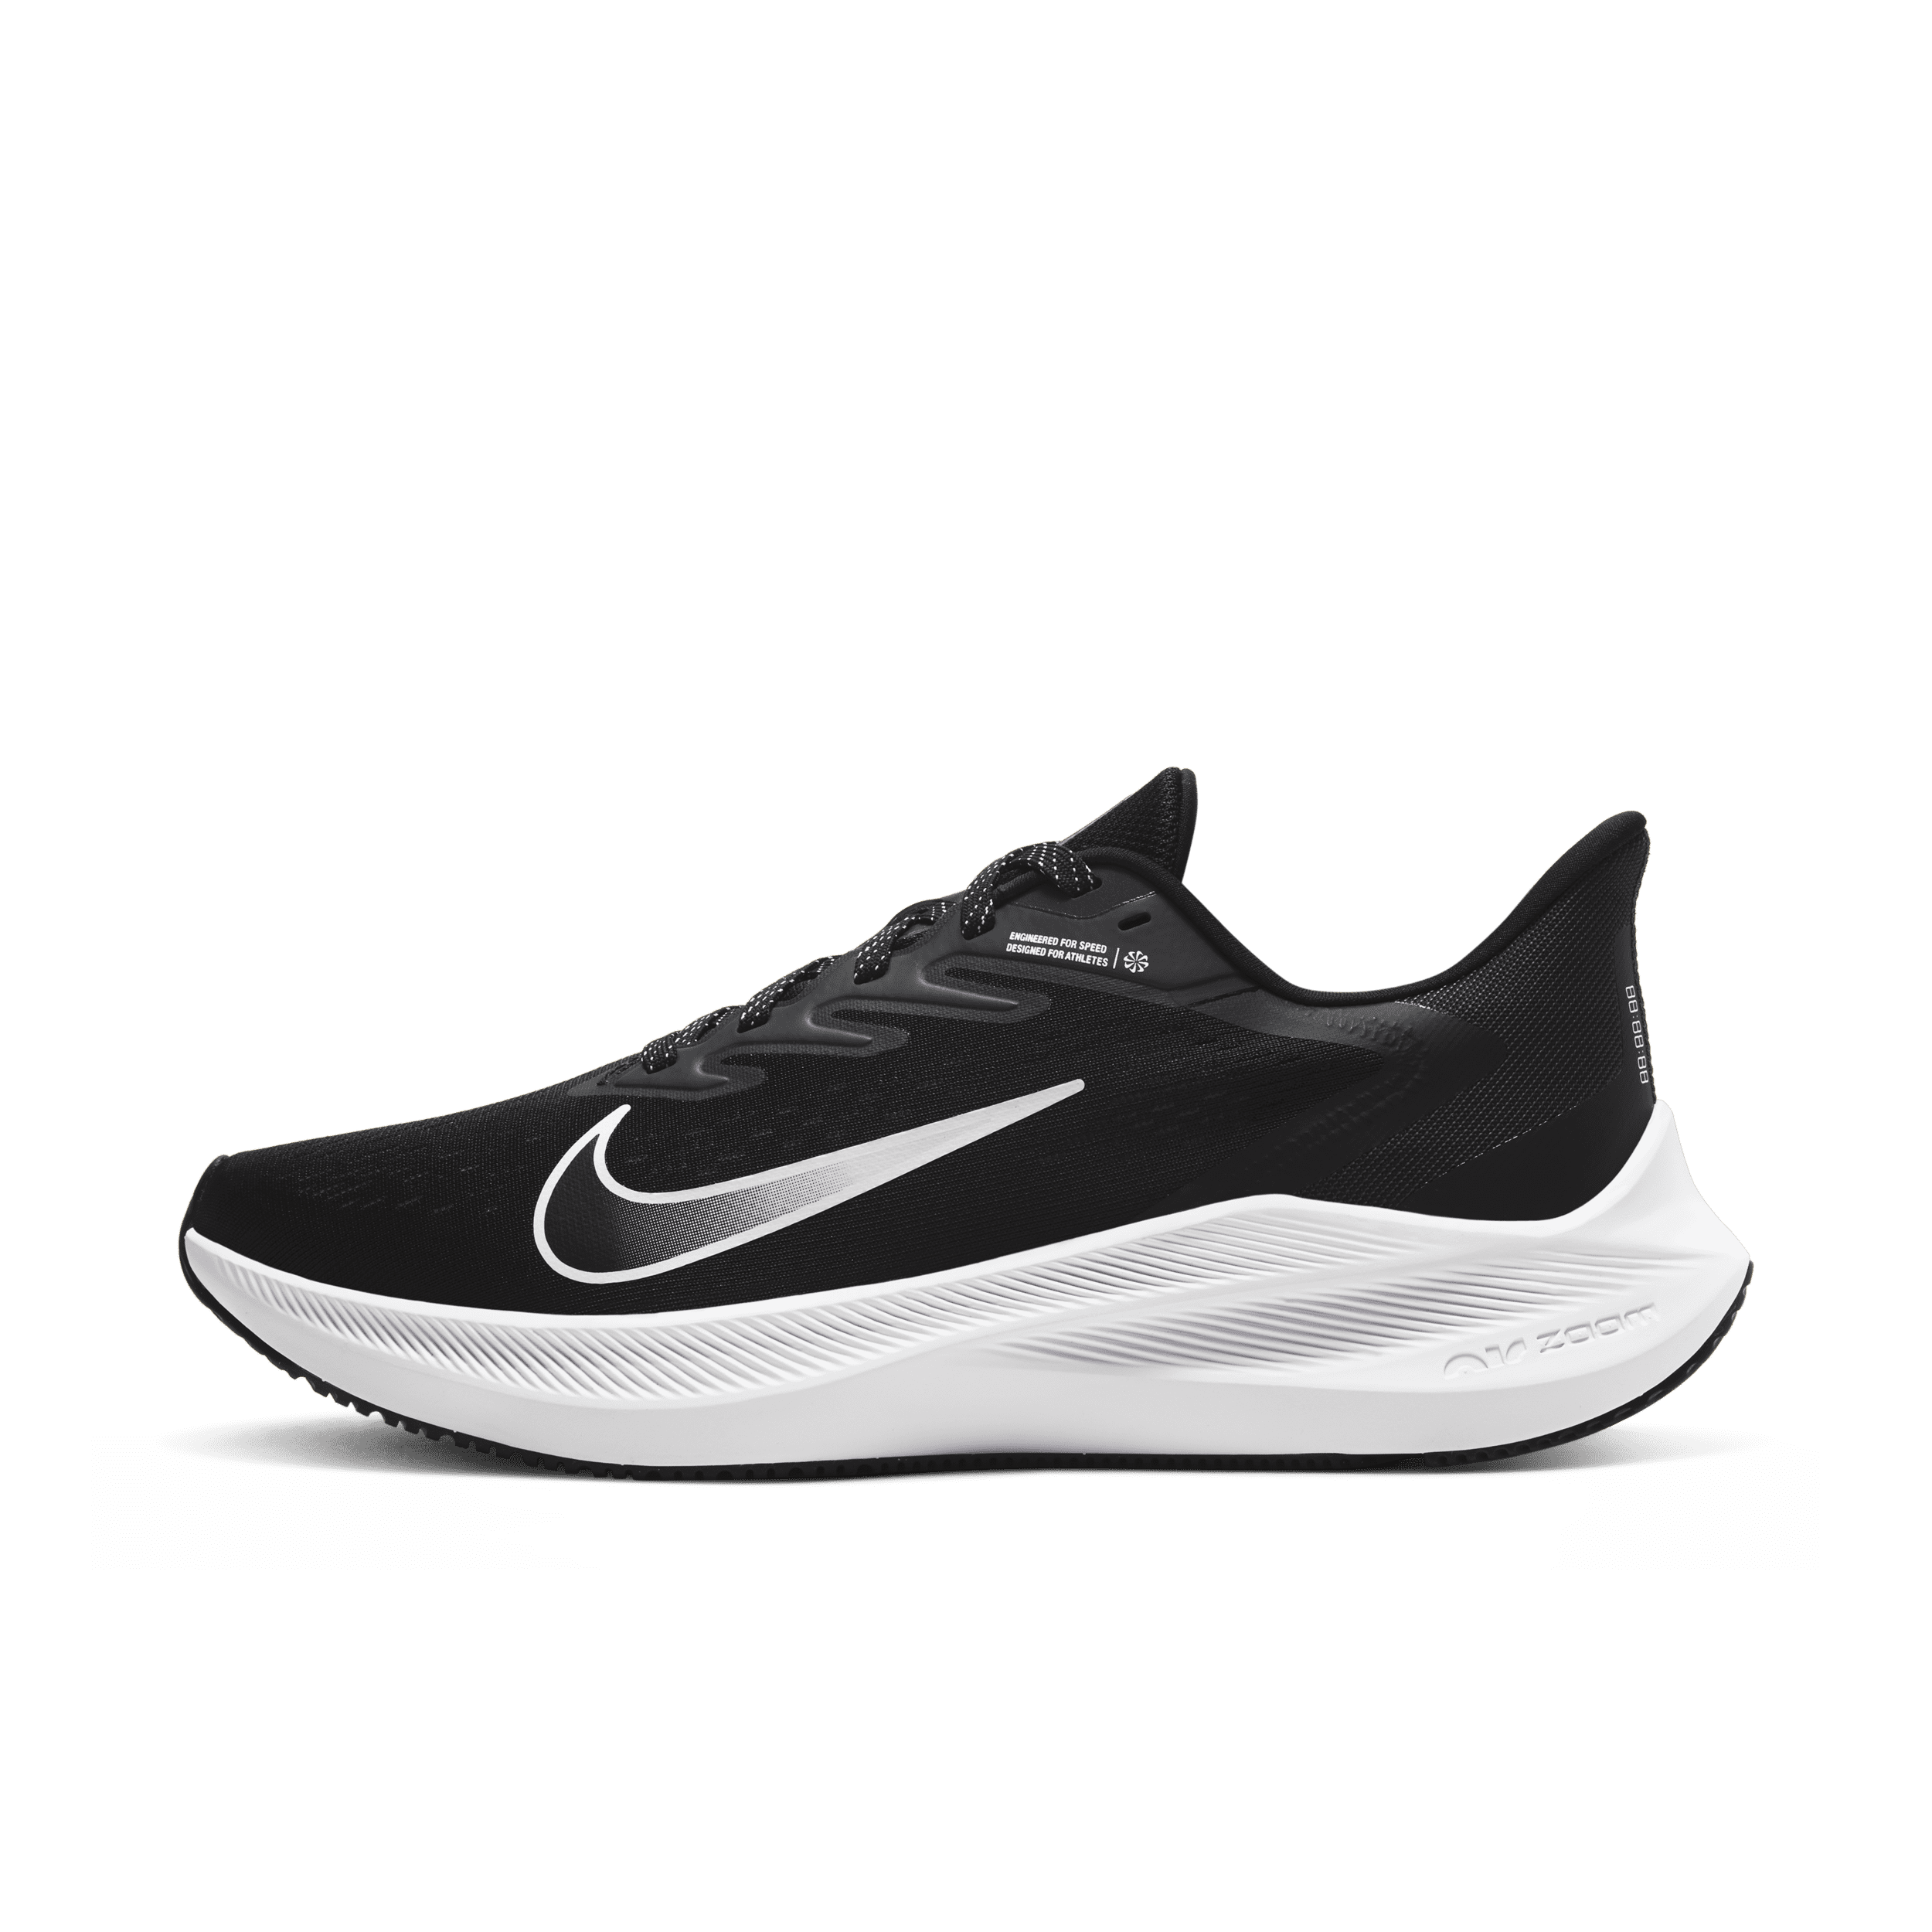 Damskie buty do biegania po asfalcie Nike Air Zoom Winflo 7 - Czerń